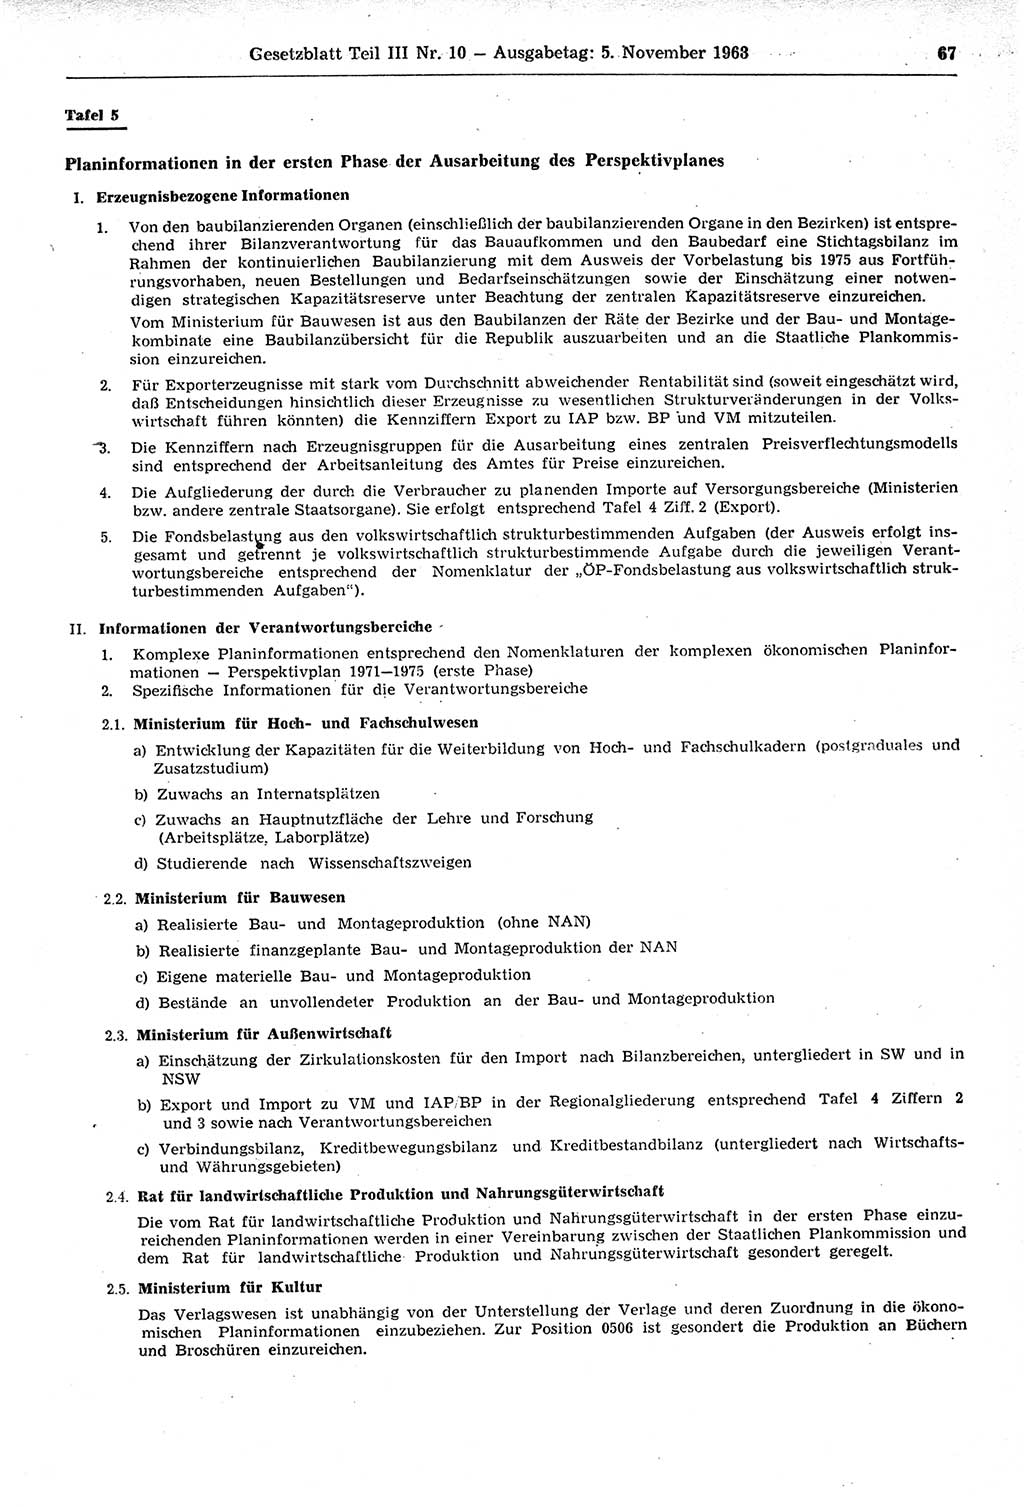 Gesetzblatt (GBl.) der Deutschen Demokratischen Republik (DDR) Teil ⅠⅠⅠ 1968, Seite 67 (GBl. DDR ⅠⅠⅠ 1968, S. 67)